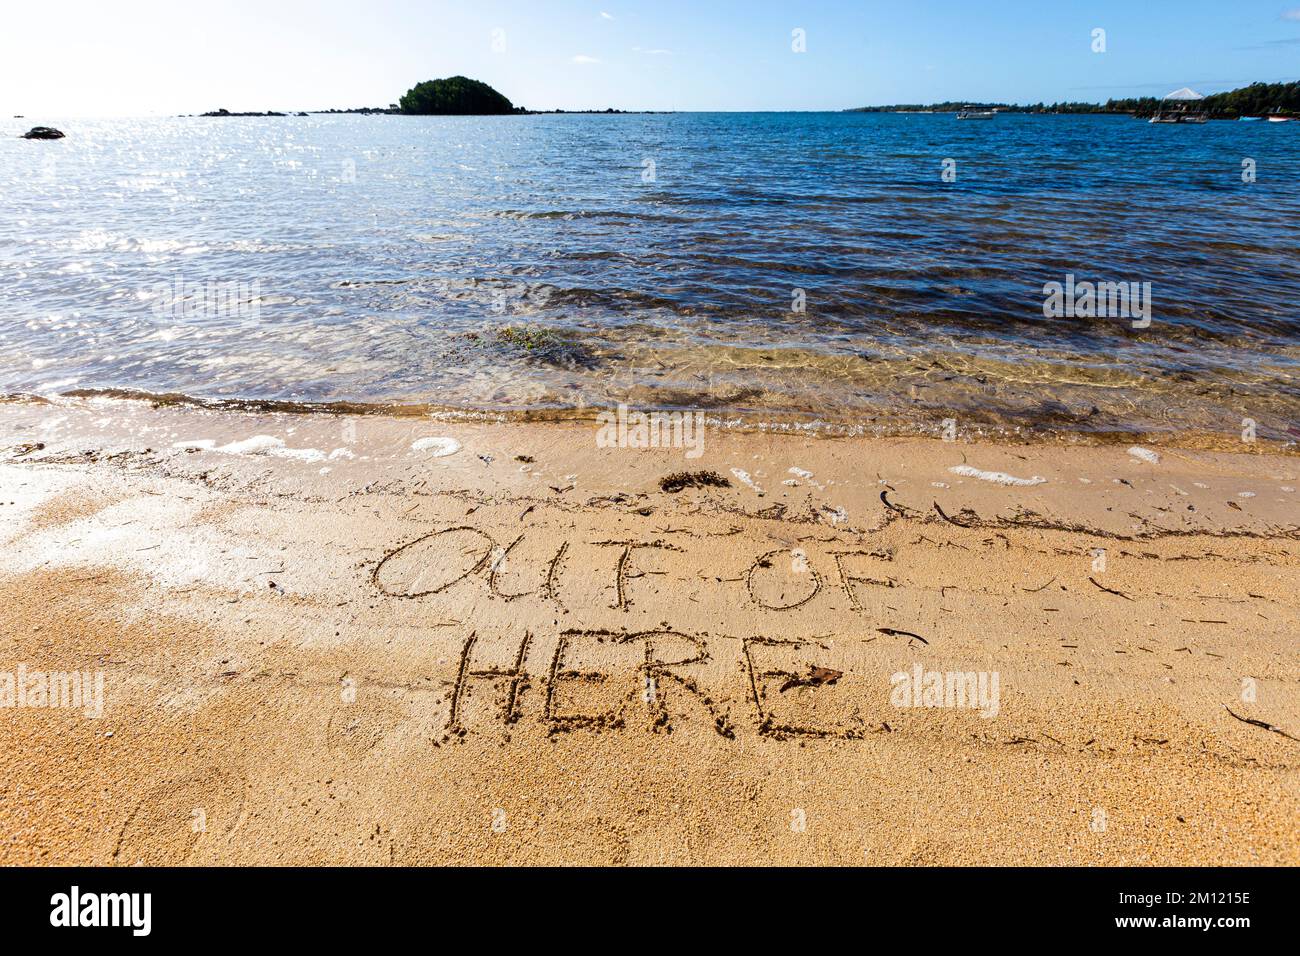 Raus hier - wie eine Nachricht geschrieben mit einem Finger im Sand an einem Strand mit Wellen und blauem Ozean auf Mauritius Insel, Afrika, Draufsicht, niemand Stockfoto